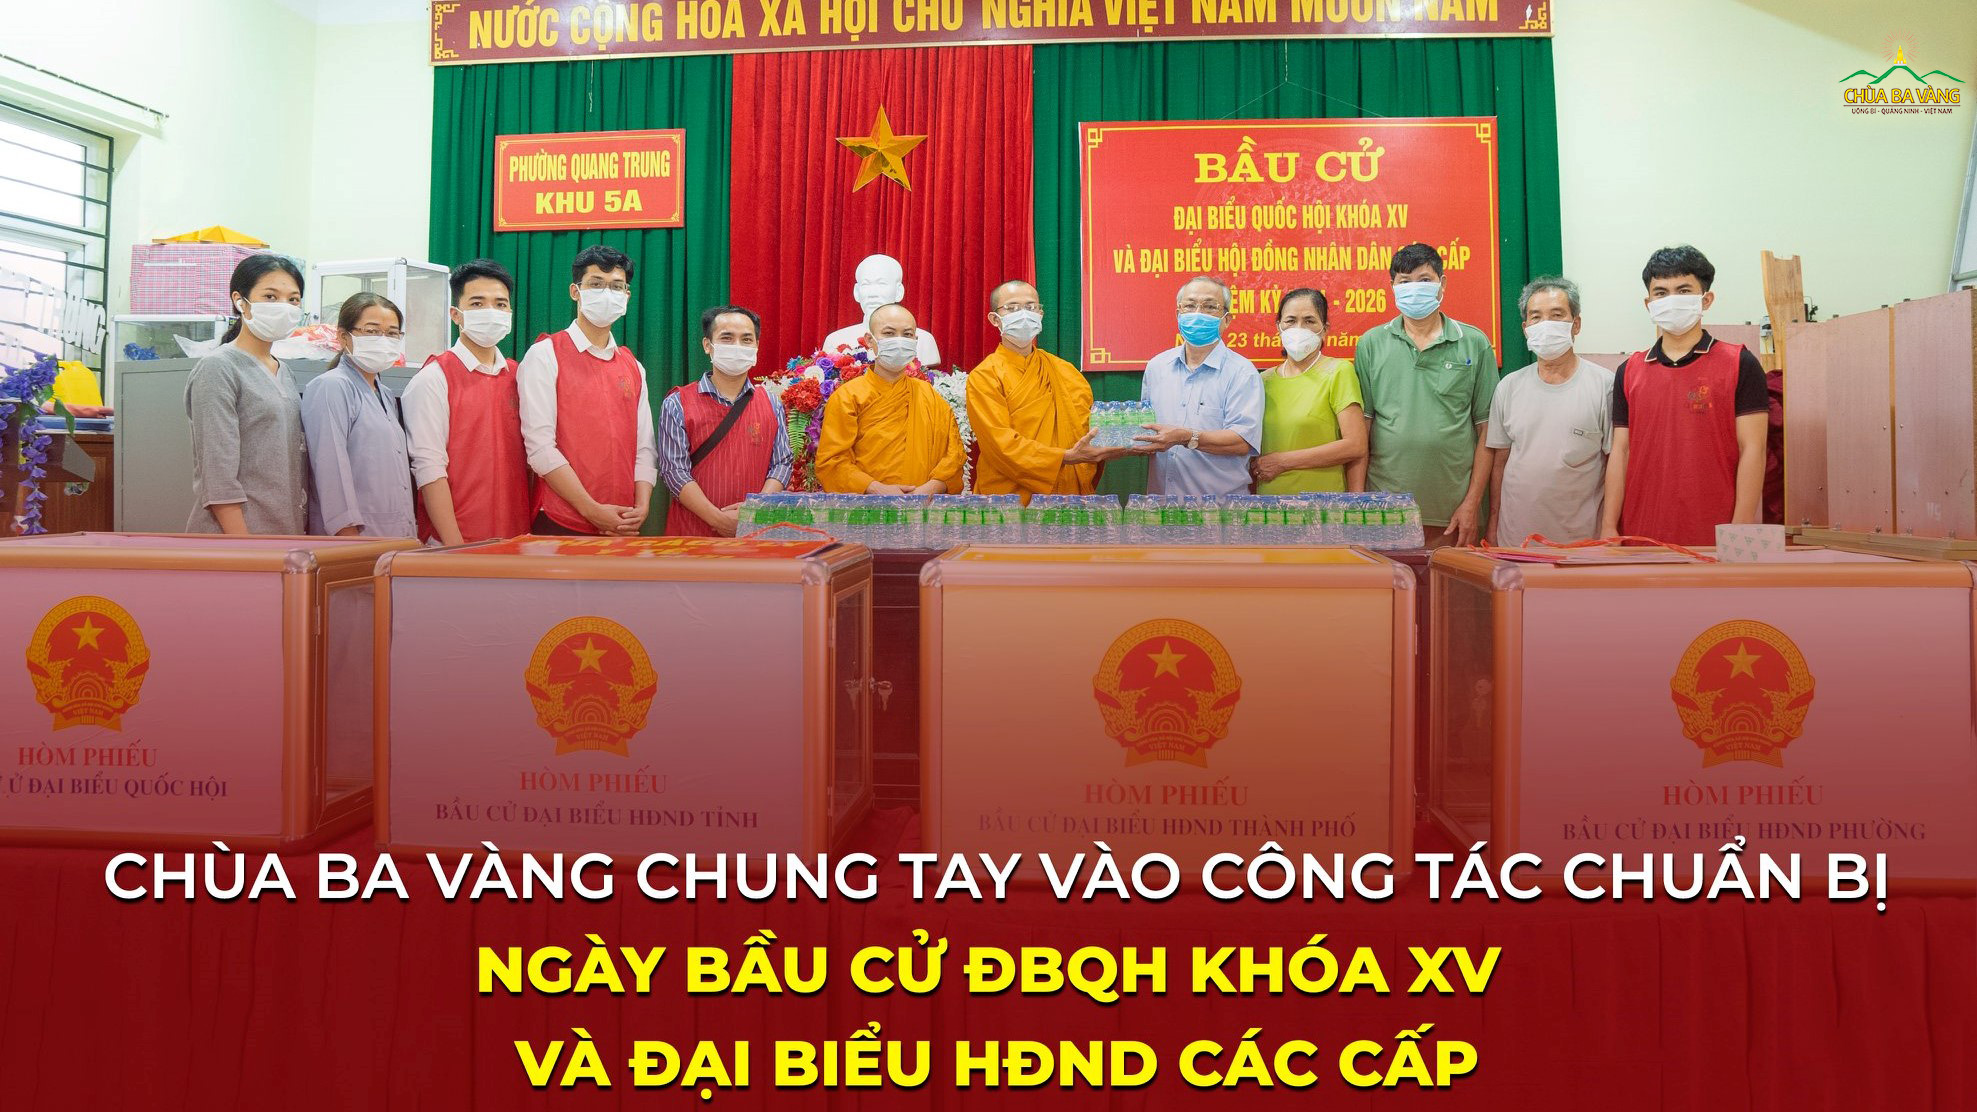 Đại diện chư Tăng, Phật tử chùa Ba Vàng đã trao tặng gần 3000 chai nước tinh khiết tới phường Quang Trung, phường Thanh Sơn, thành phố Uông Bí để phục vụ công tác bầu cử